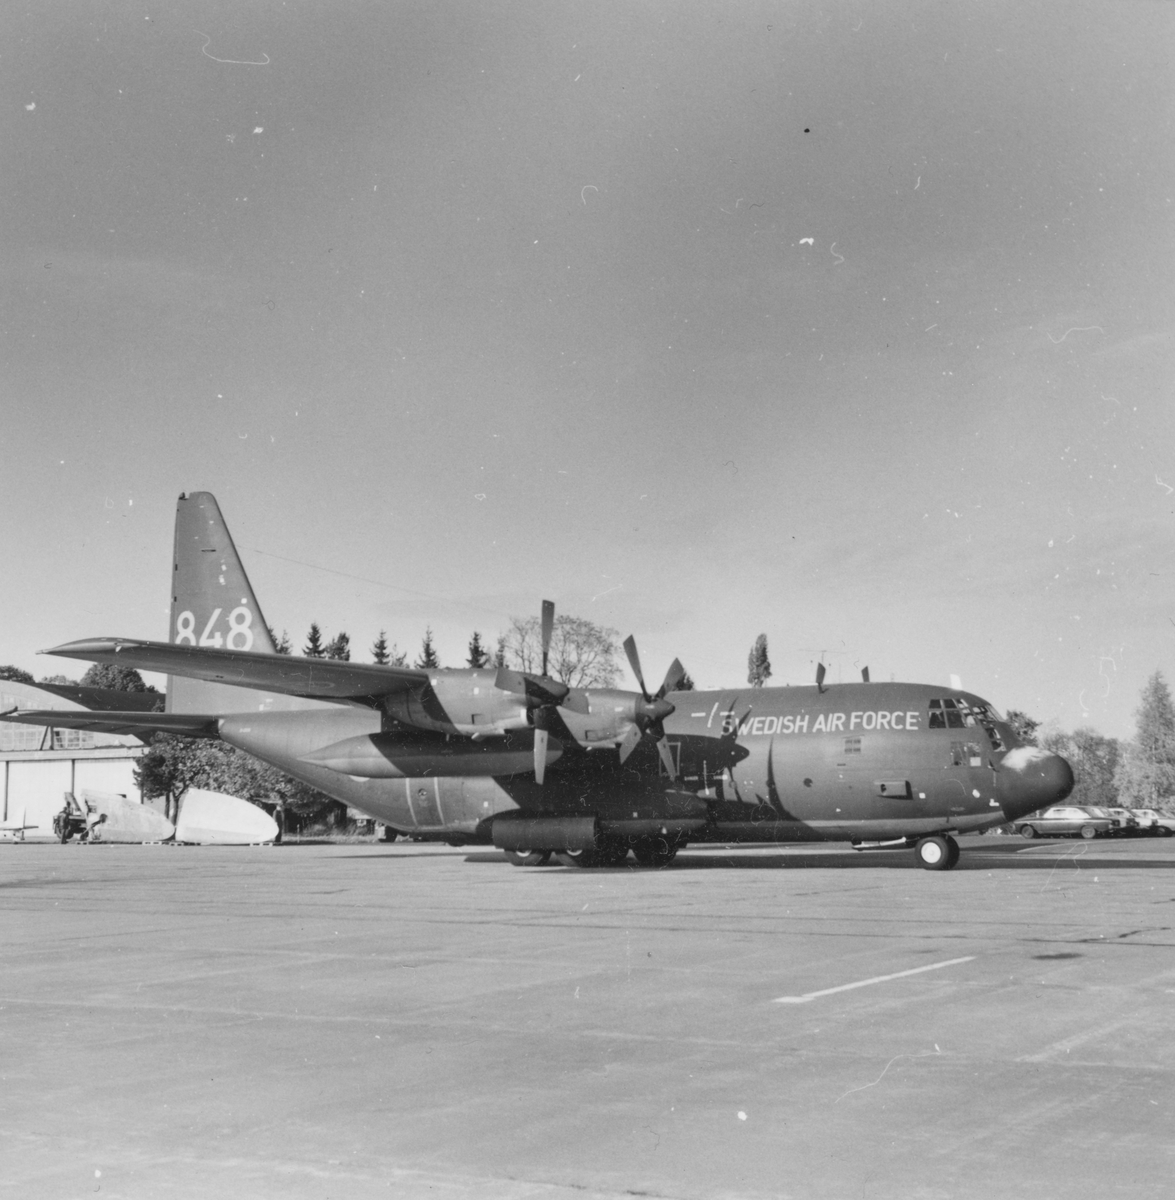 Urlastning av flygplan TP 84 nummer 848 på flygfältet framför en hangar på F 3 Malmen. Flygplanet har ett flygplan Spitfire som last, vilket har anlänt till Flygvapenmuseum från Kanada.